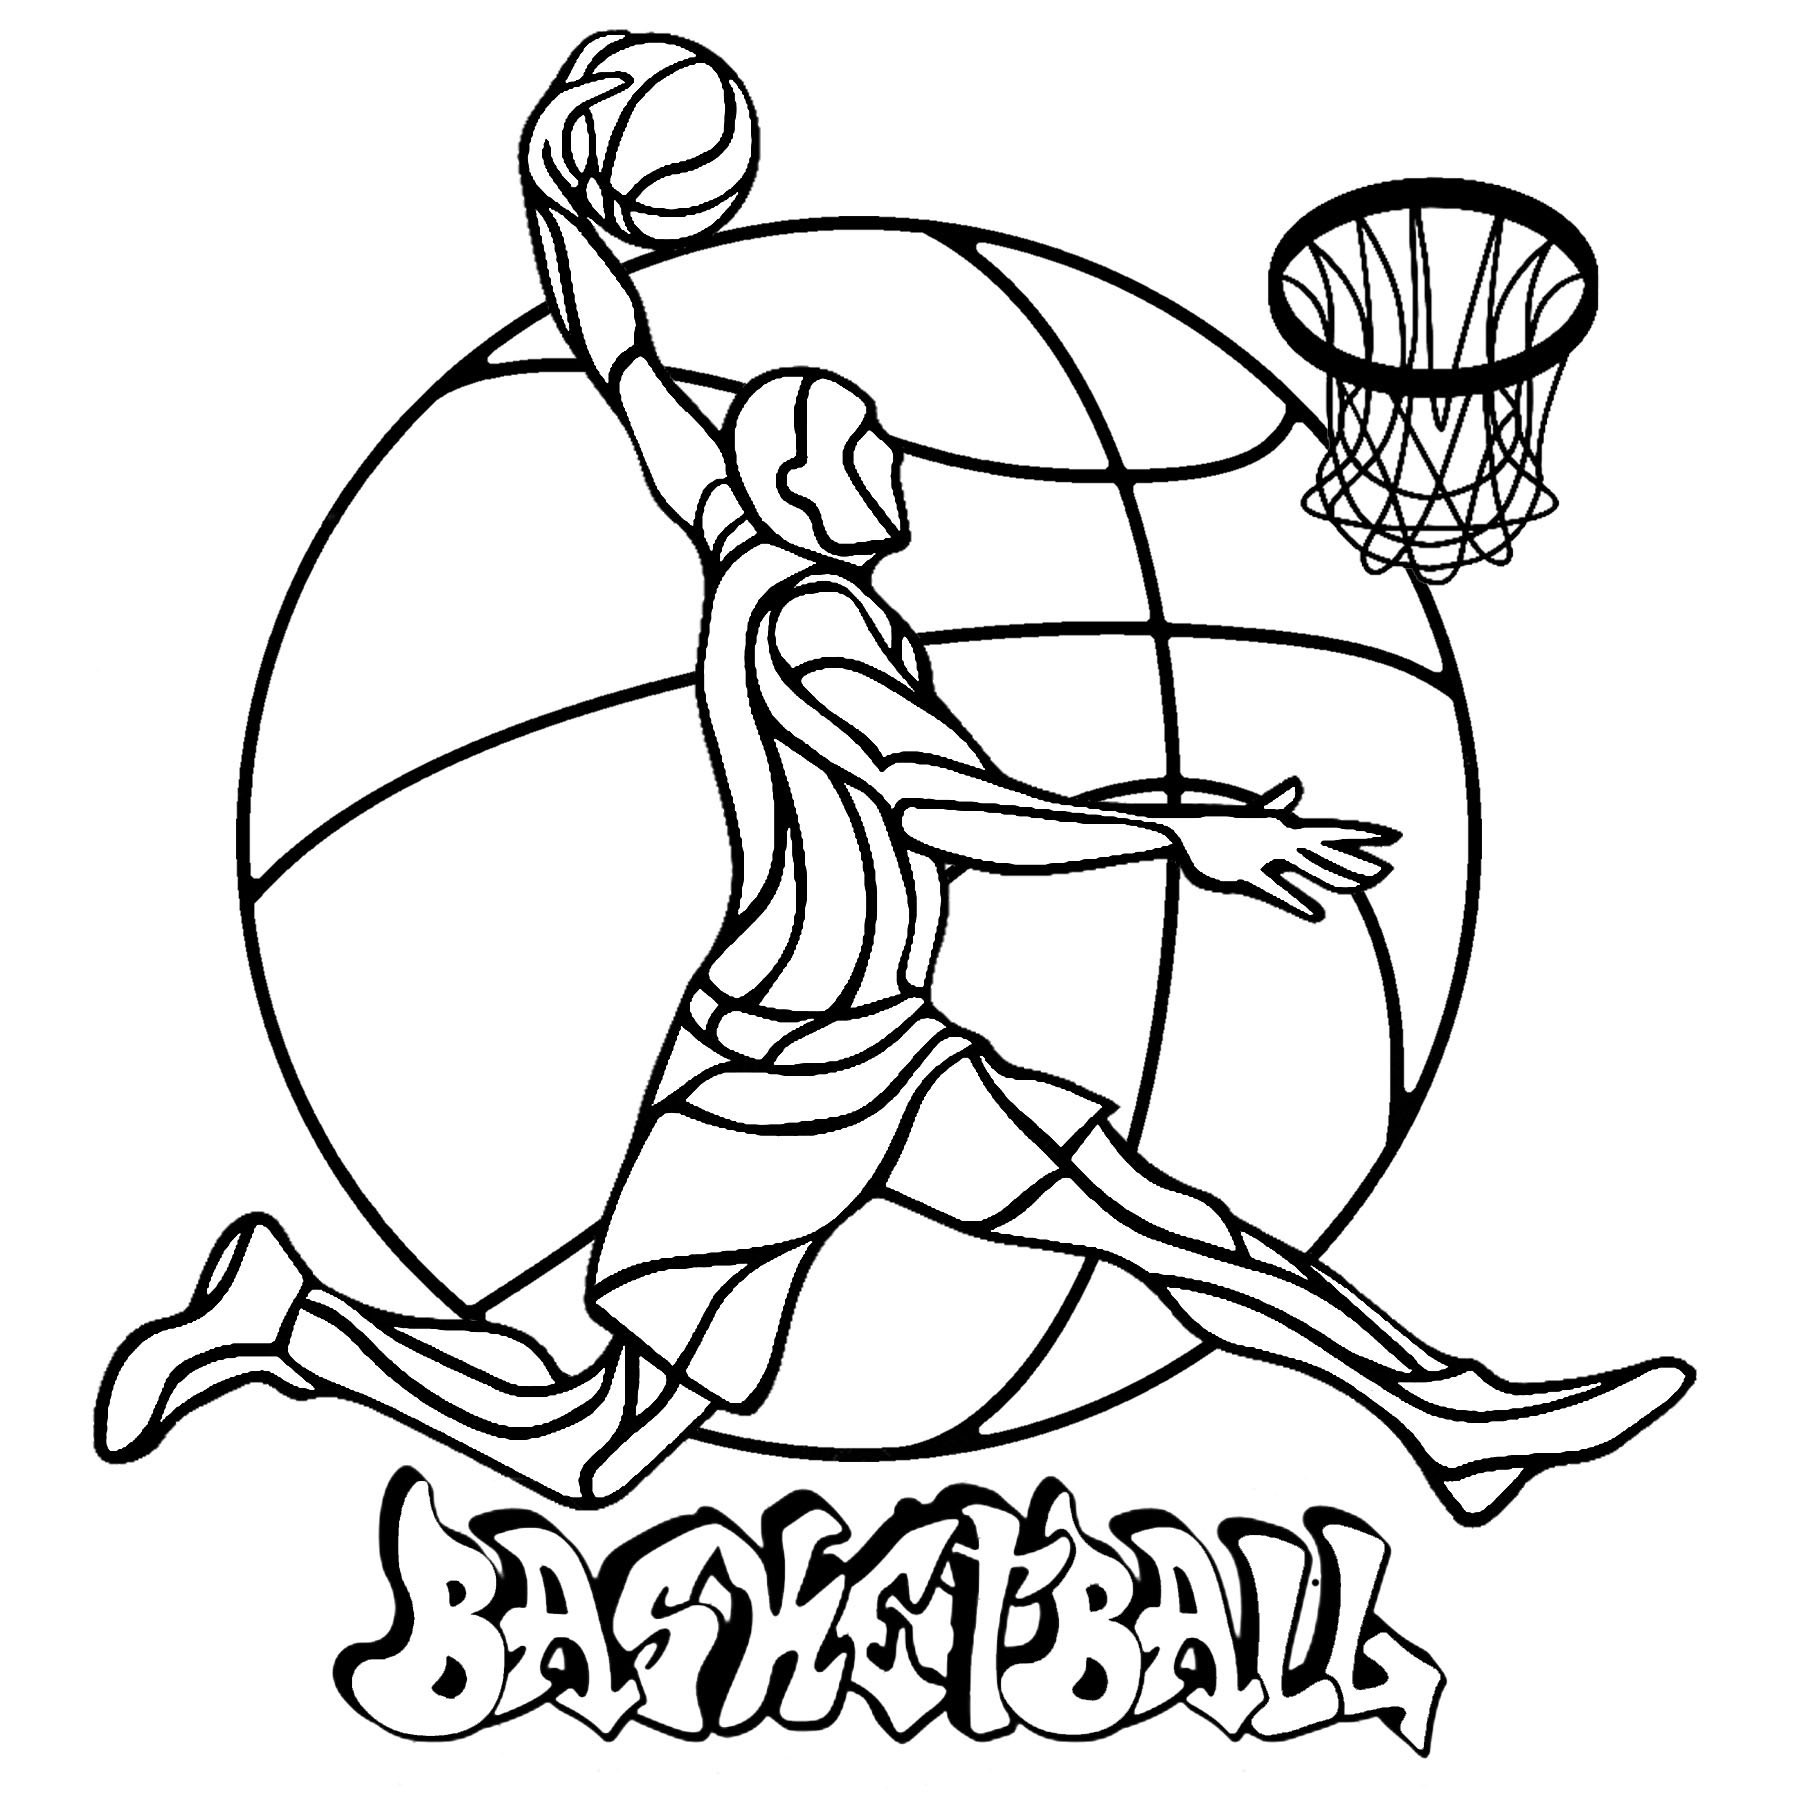 Un coloriage sur le thème du Basketball, avec un joueur, un panier, un ballon en fond, et 'Basketball' écrit en Graffiti